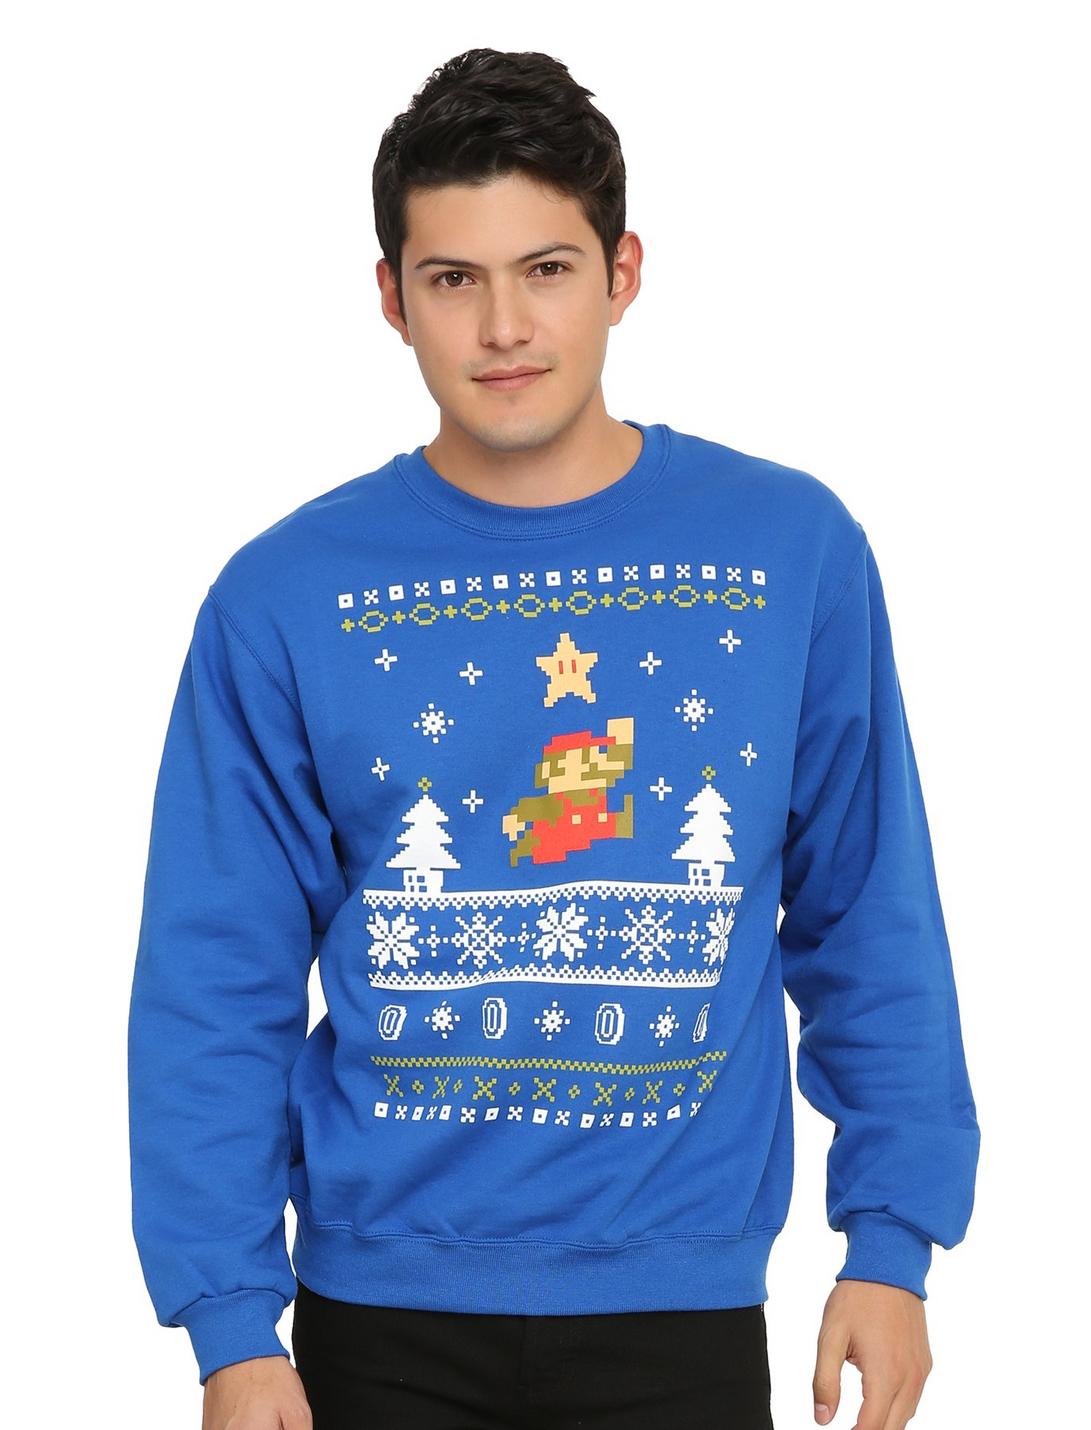 Super Mario Bros. Mario Holiday Sweater Sweatshirt, , hi-res